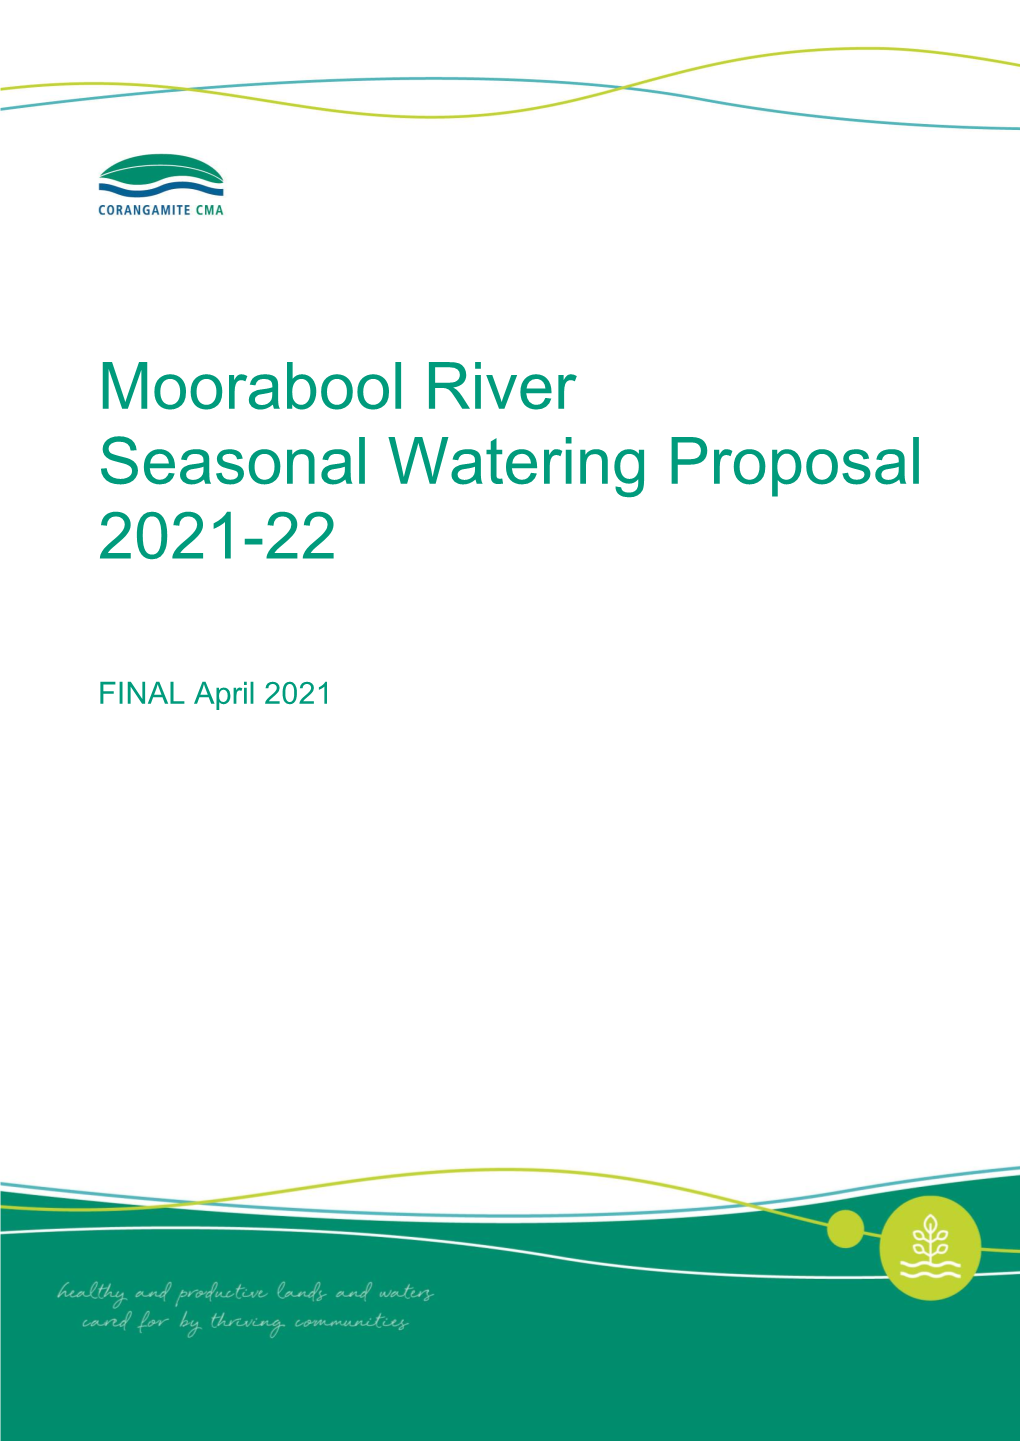 Moorabool River Seasonal Watering Proposal 2020-21